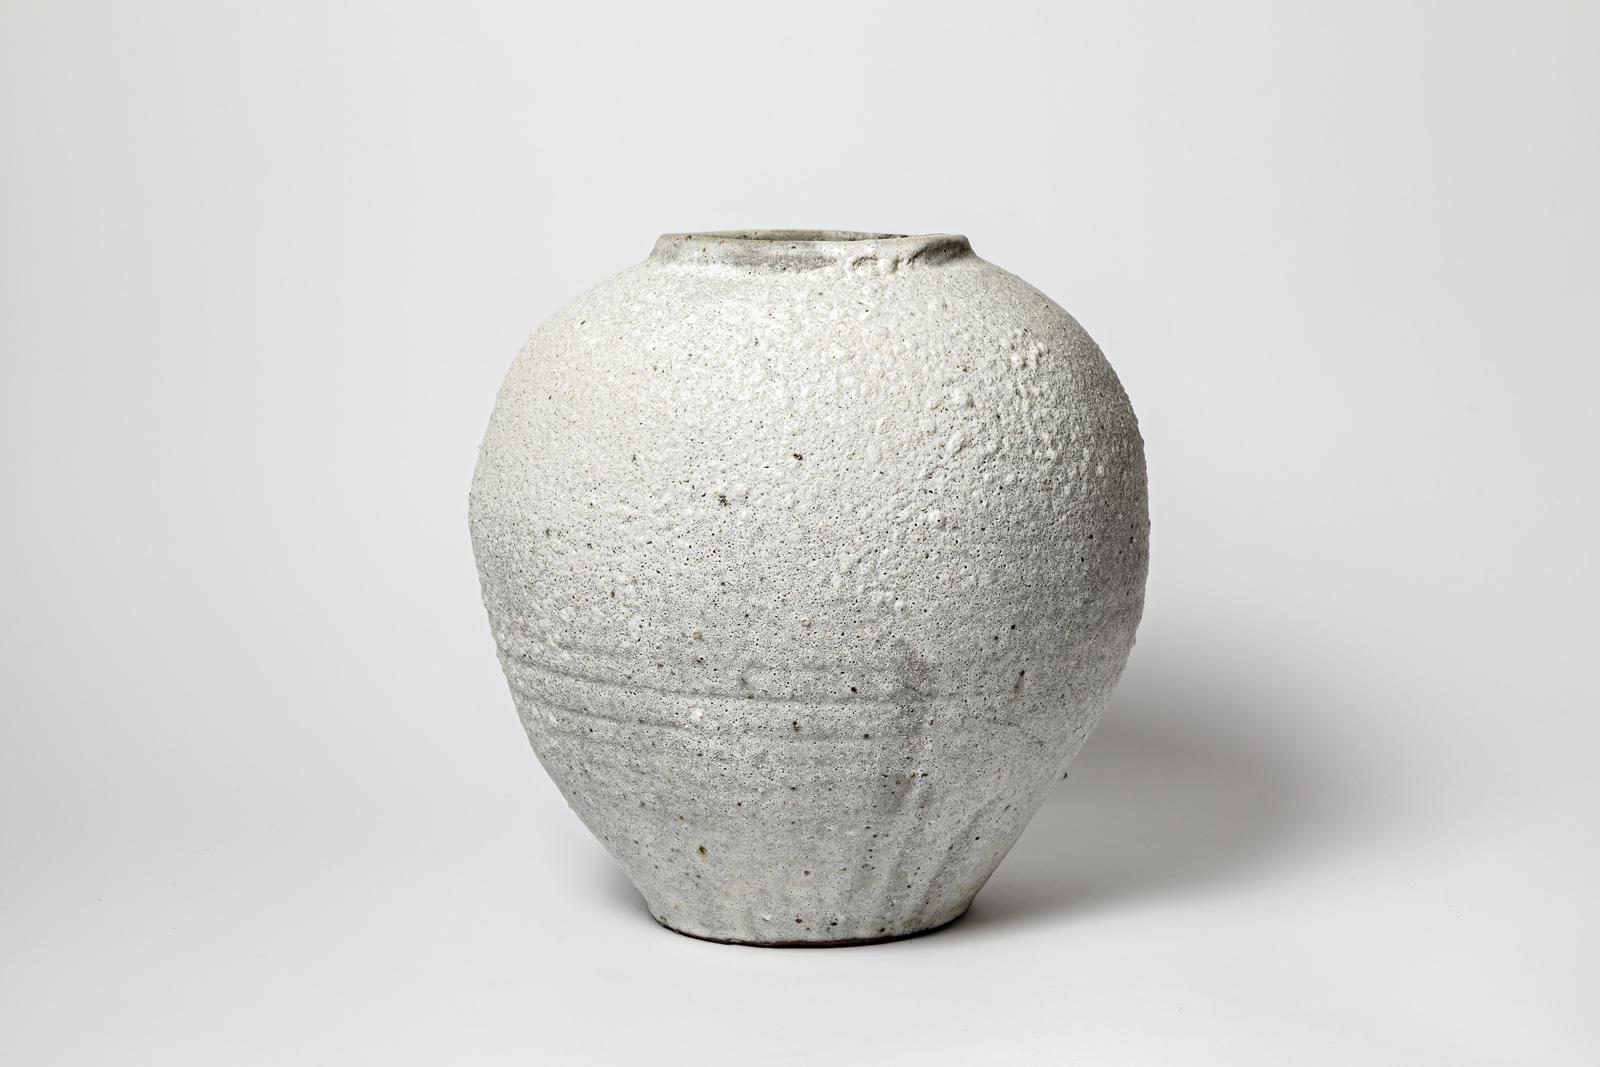 Benoit Audureau

Large stoneware ceramic vase 

White and grey moon style ceramic glazes colors

Signed

Circa 2020

height 37 cm
large 33 cm